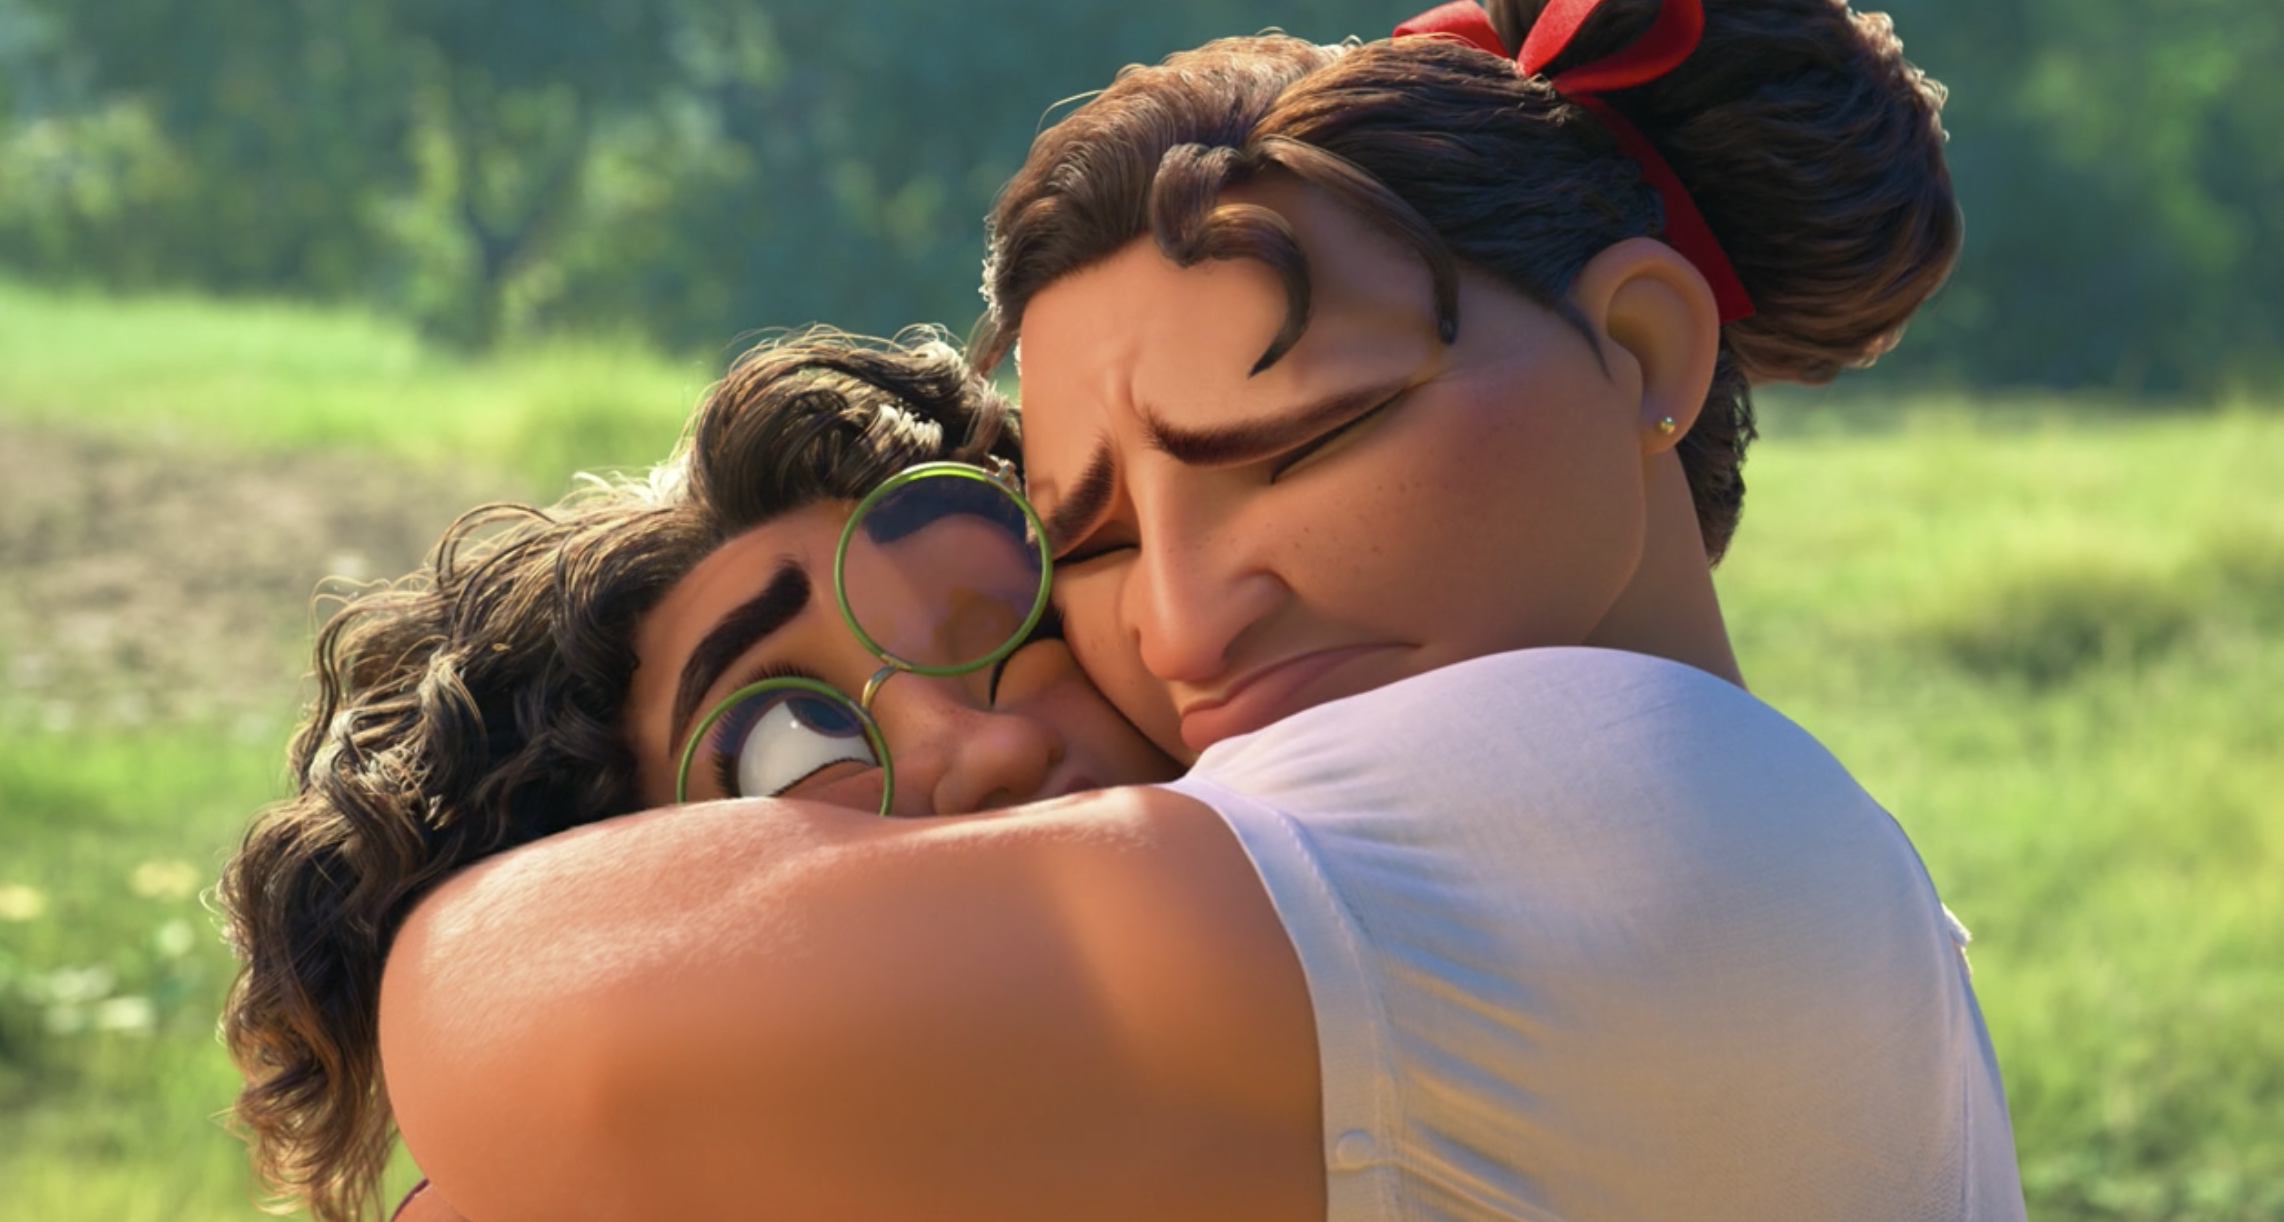 Luisa hugging Mirabel